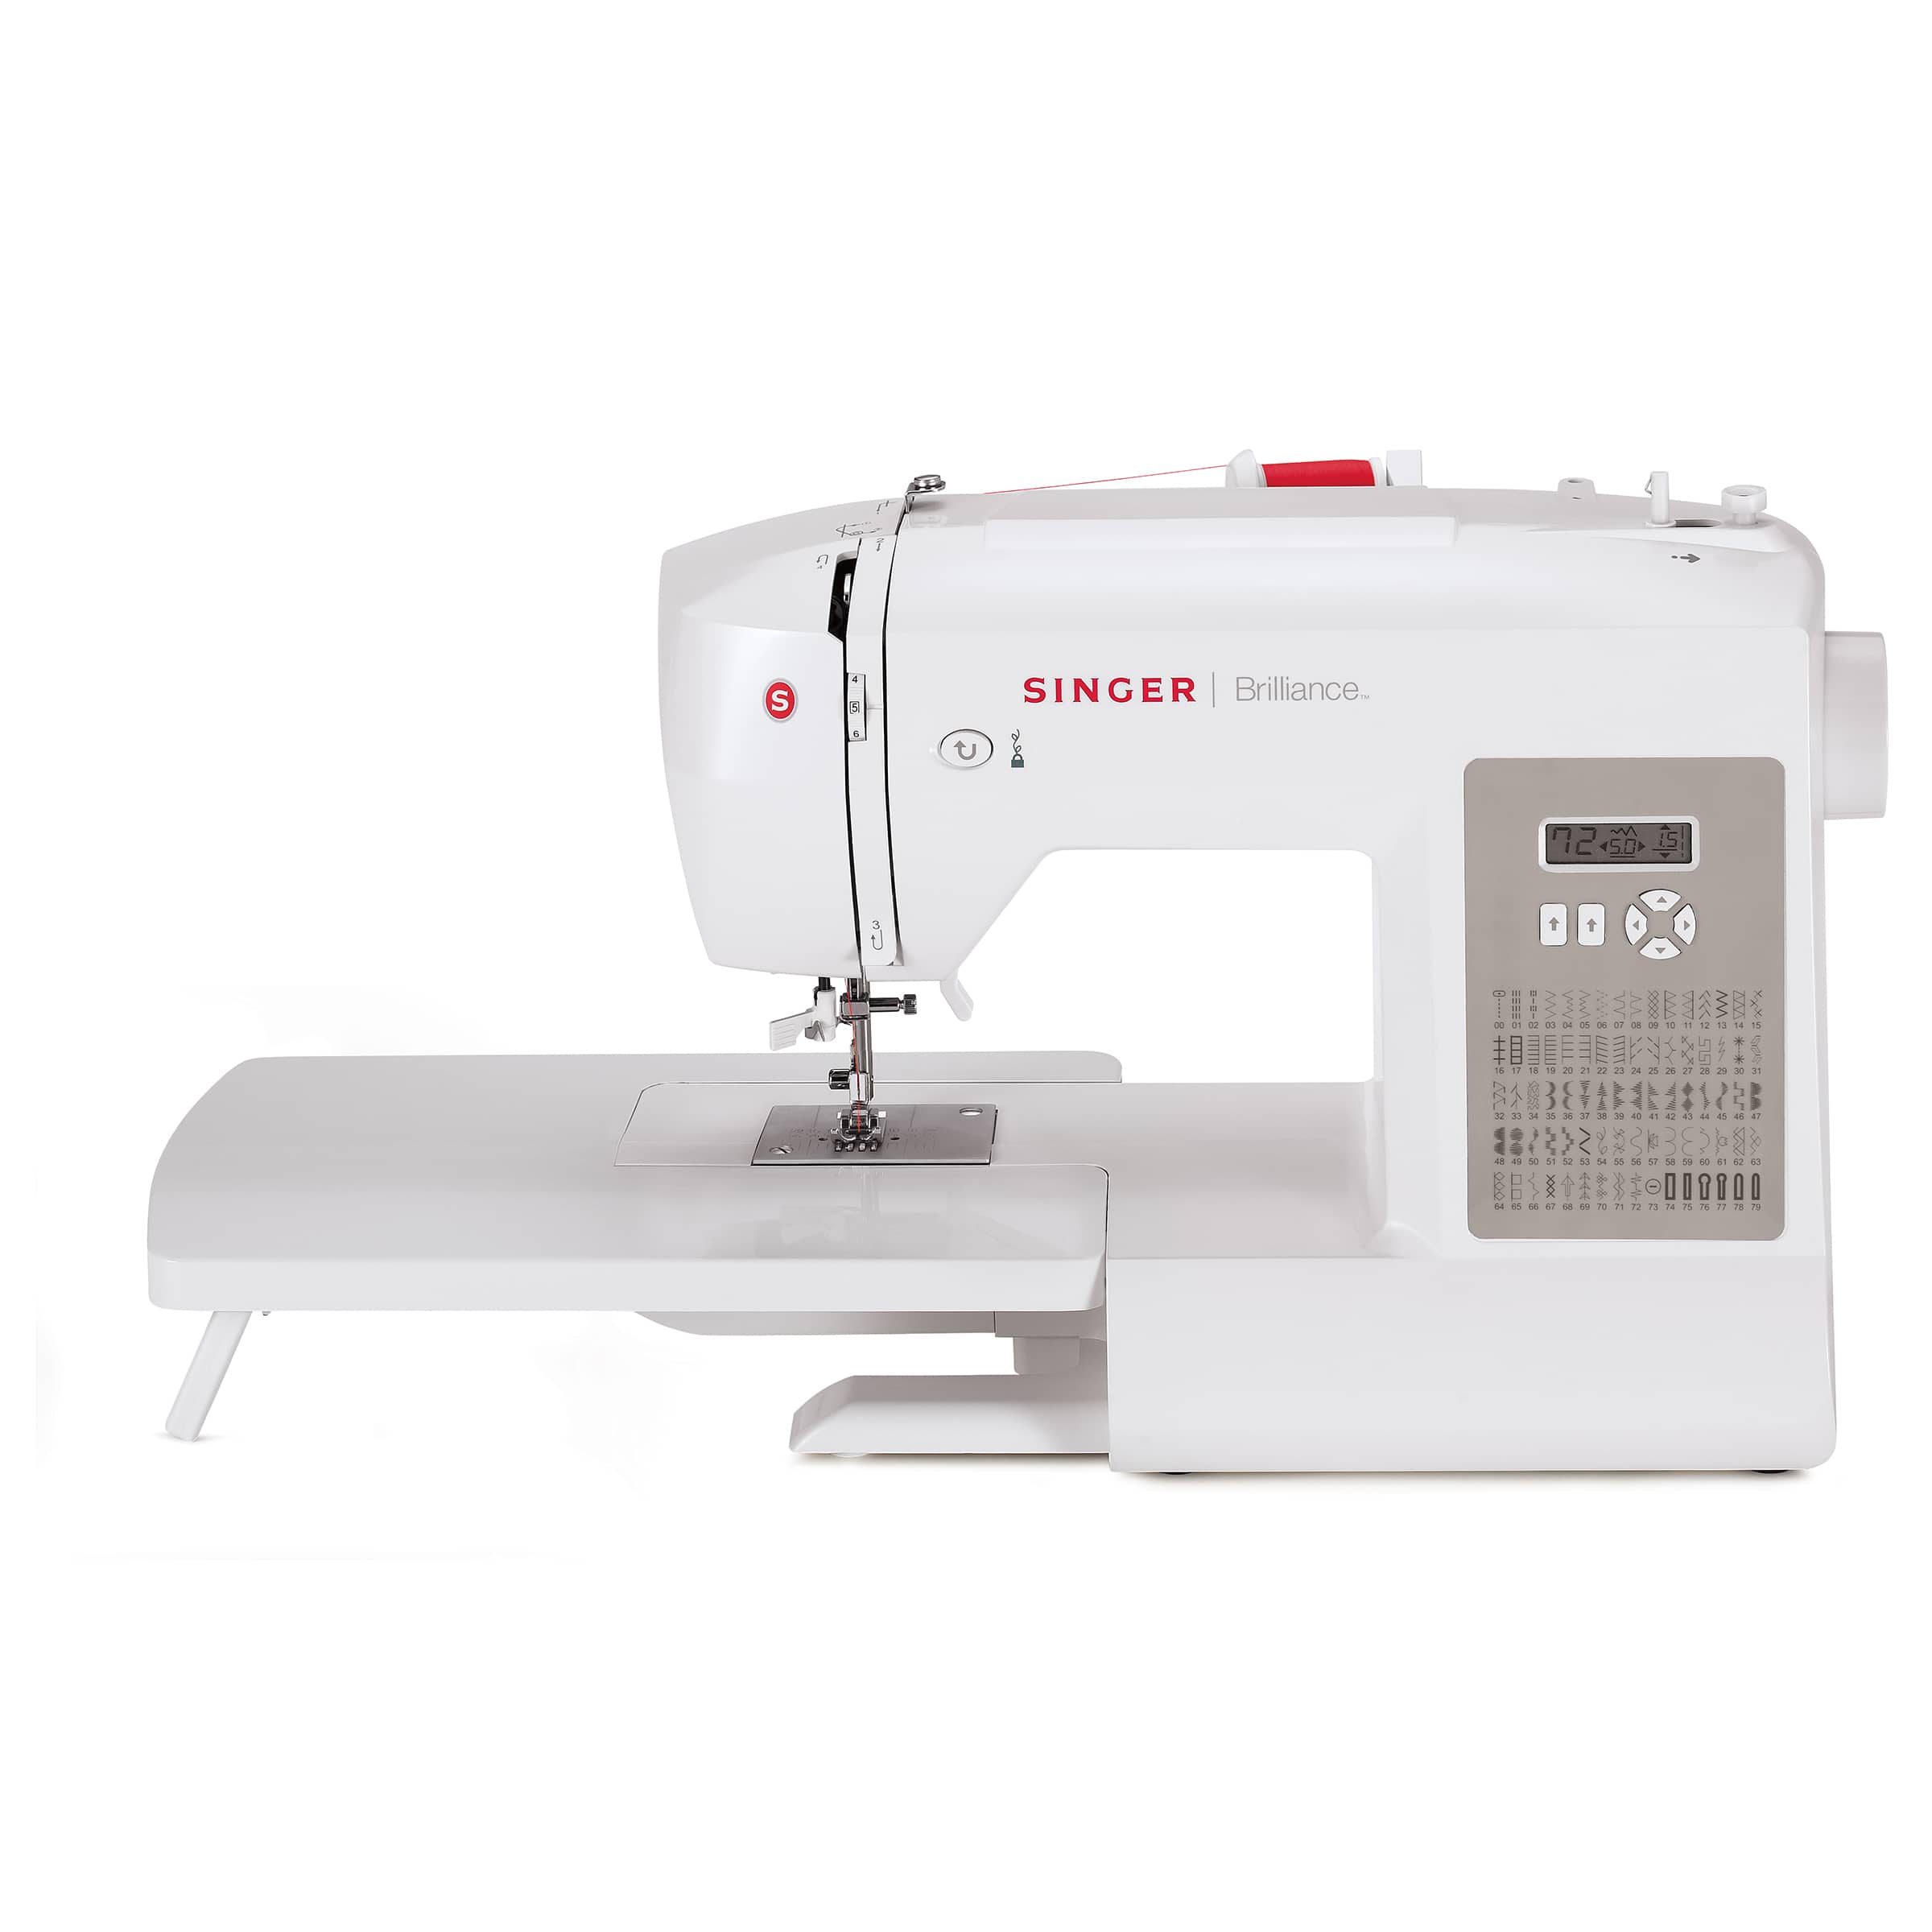 singer brilliance 6180 sewing machine